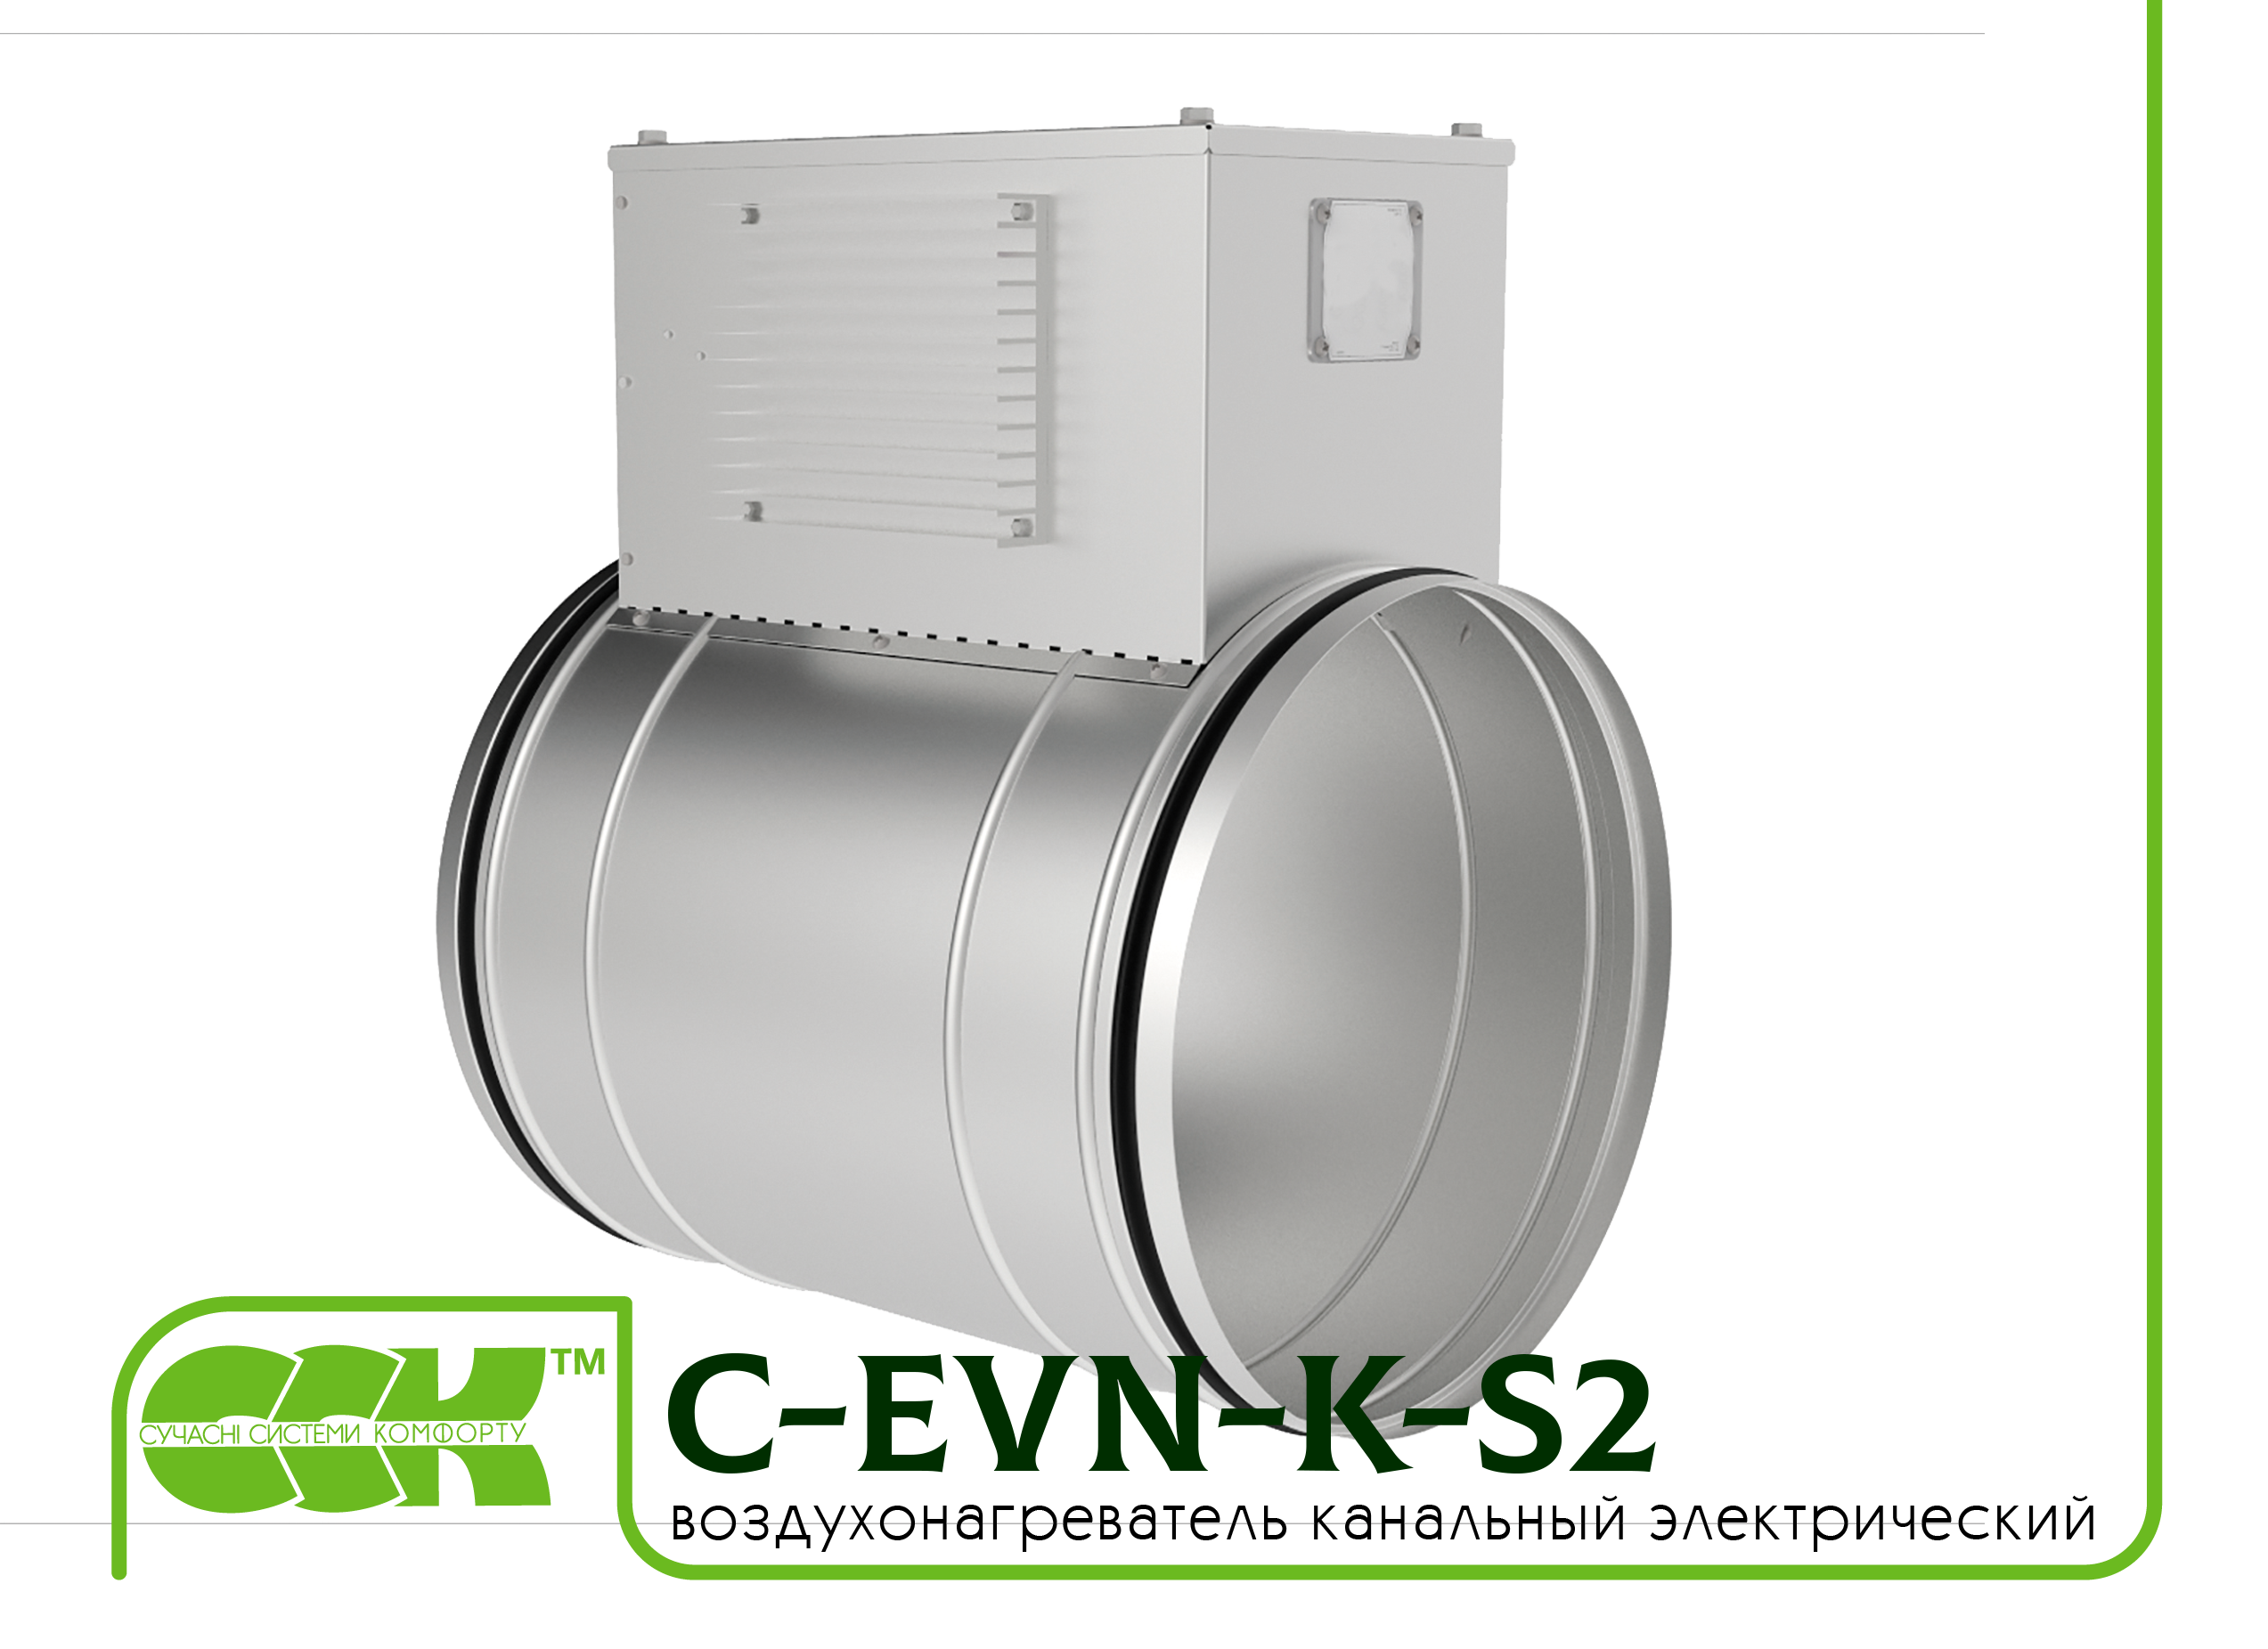 Воздухонагреватель канальный электрический для круглых каналов C-EVN-K-S2-150-3,0